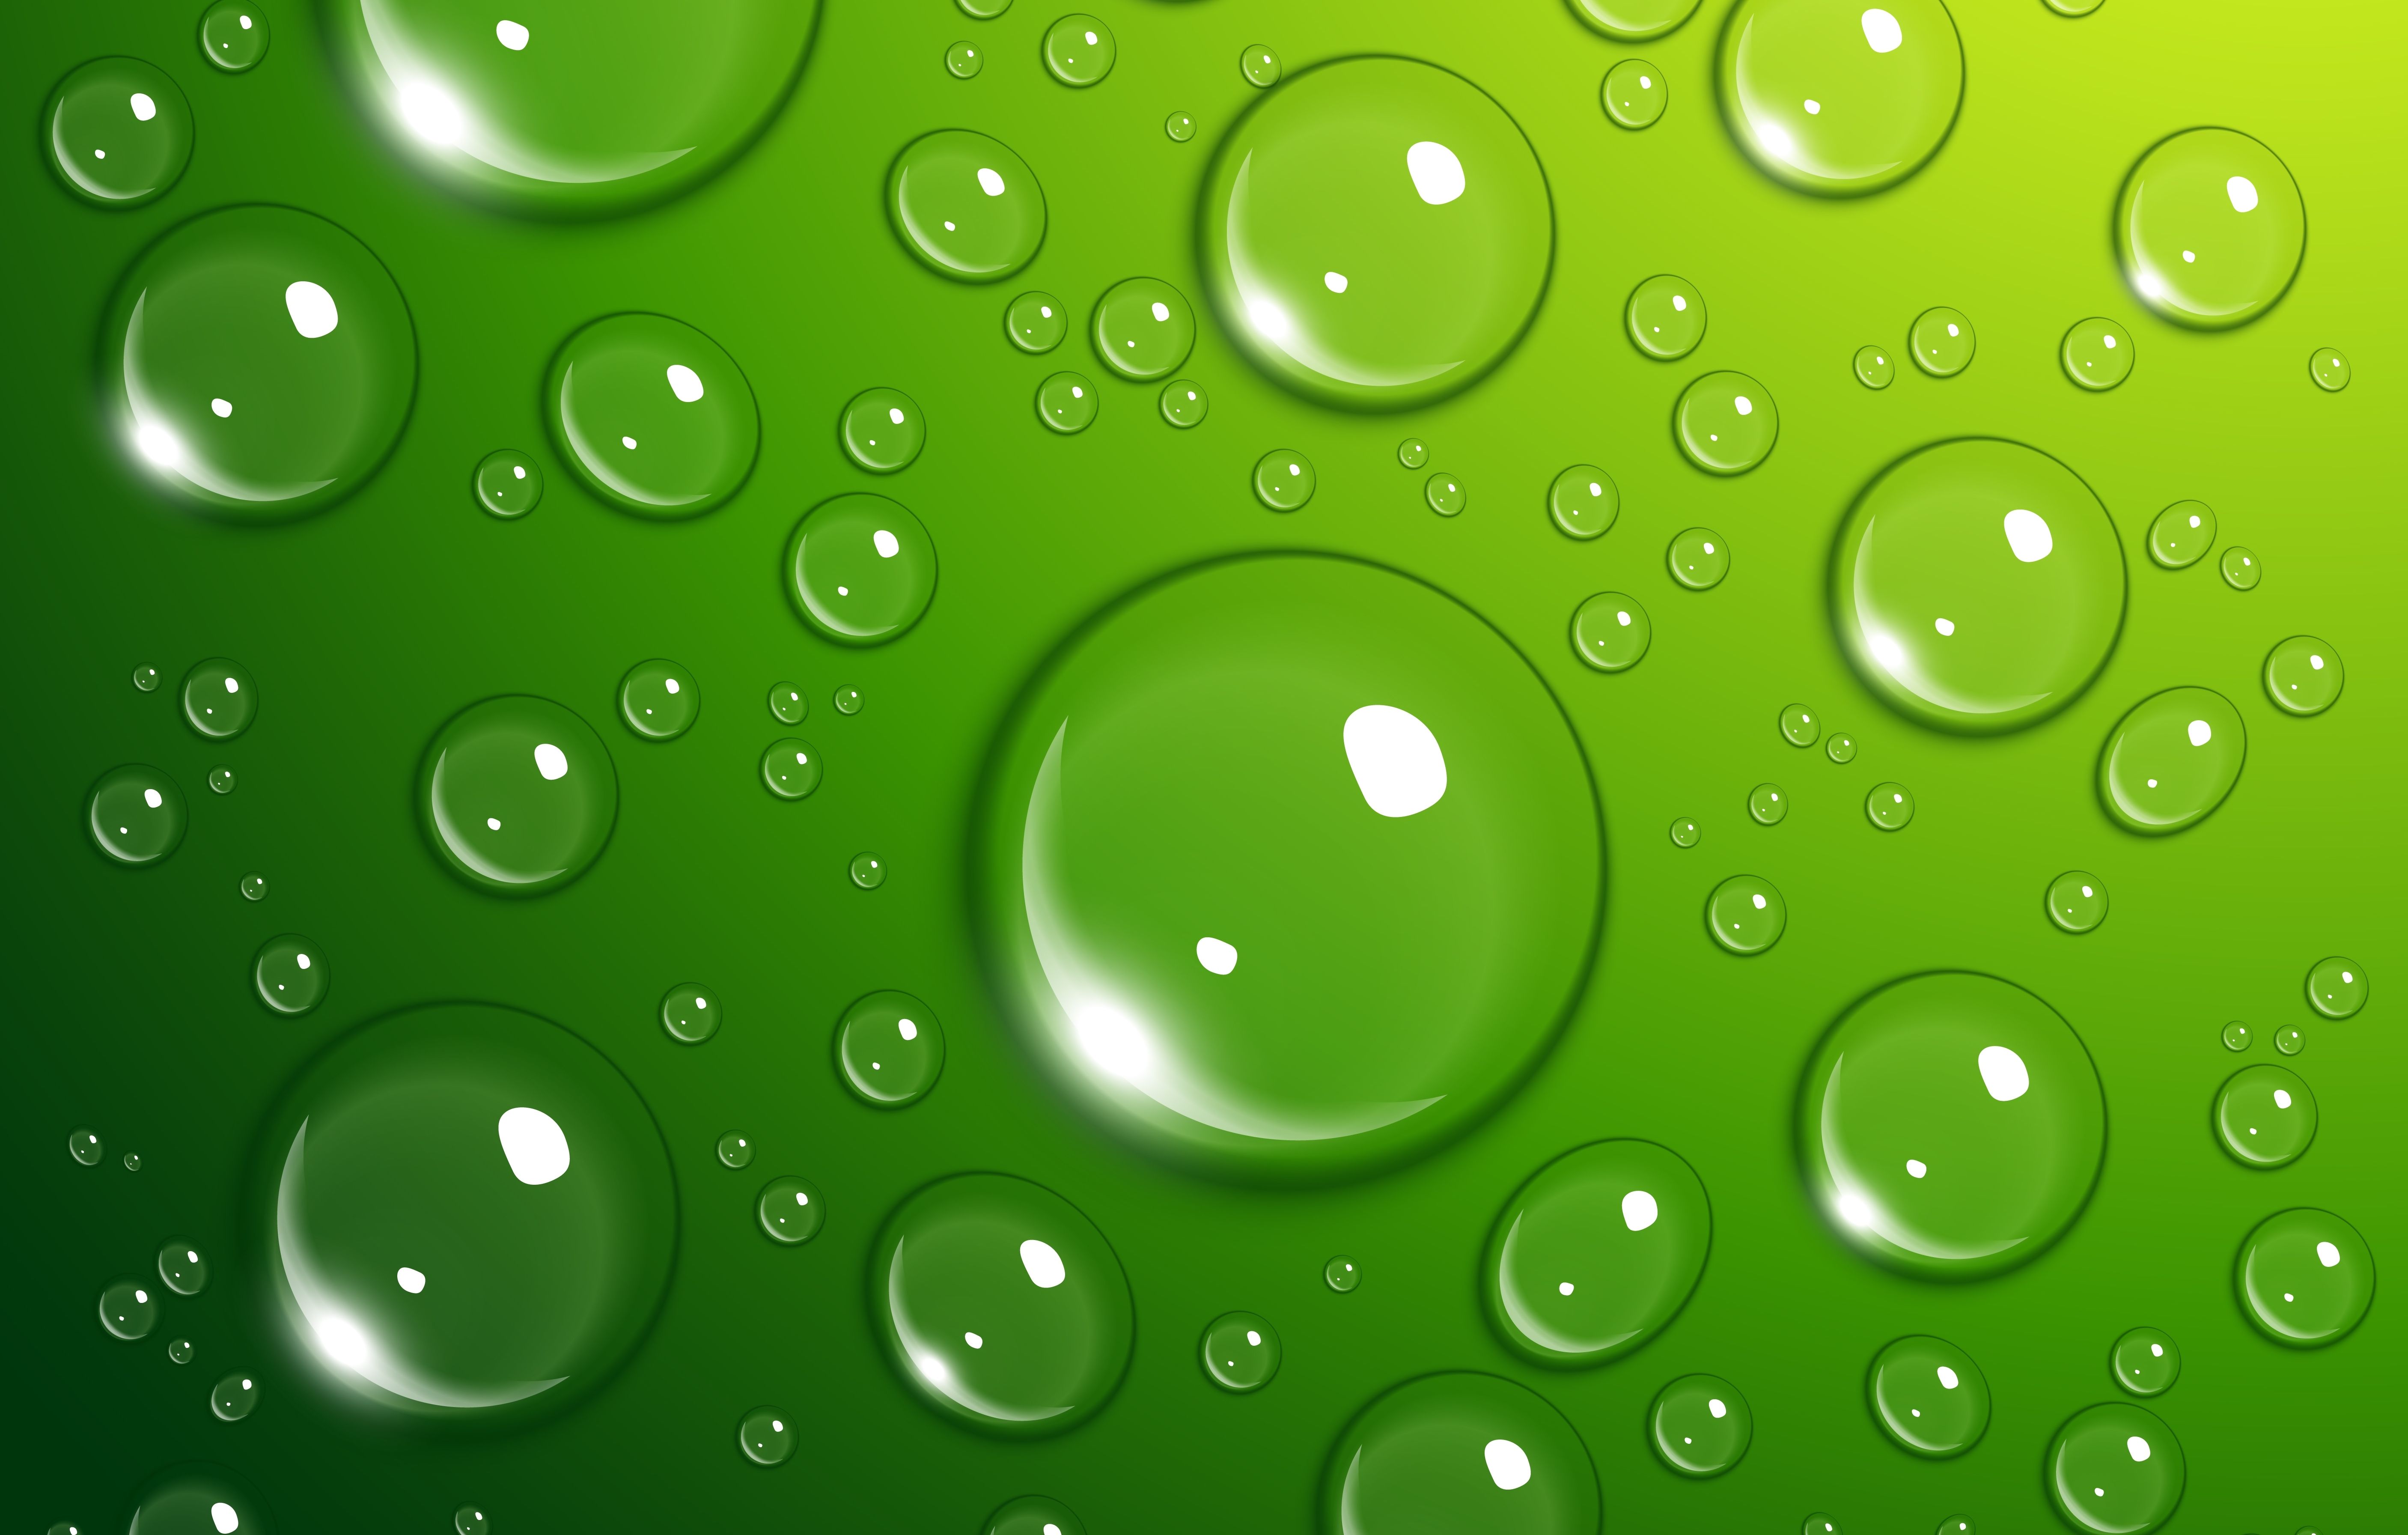 Bubbles texture photo